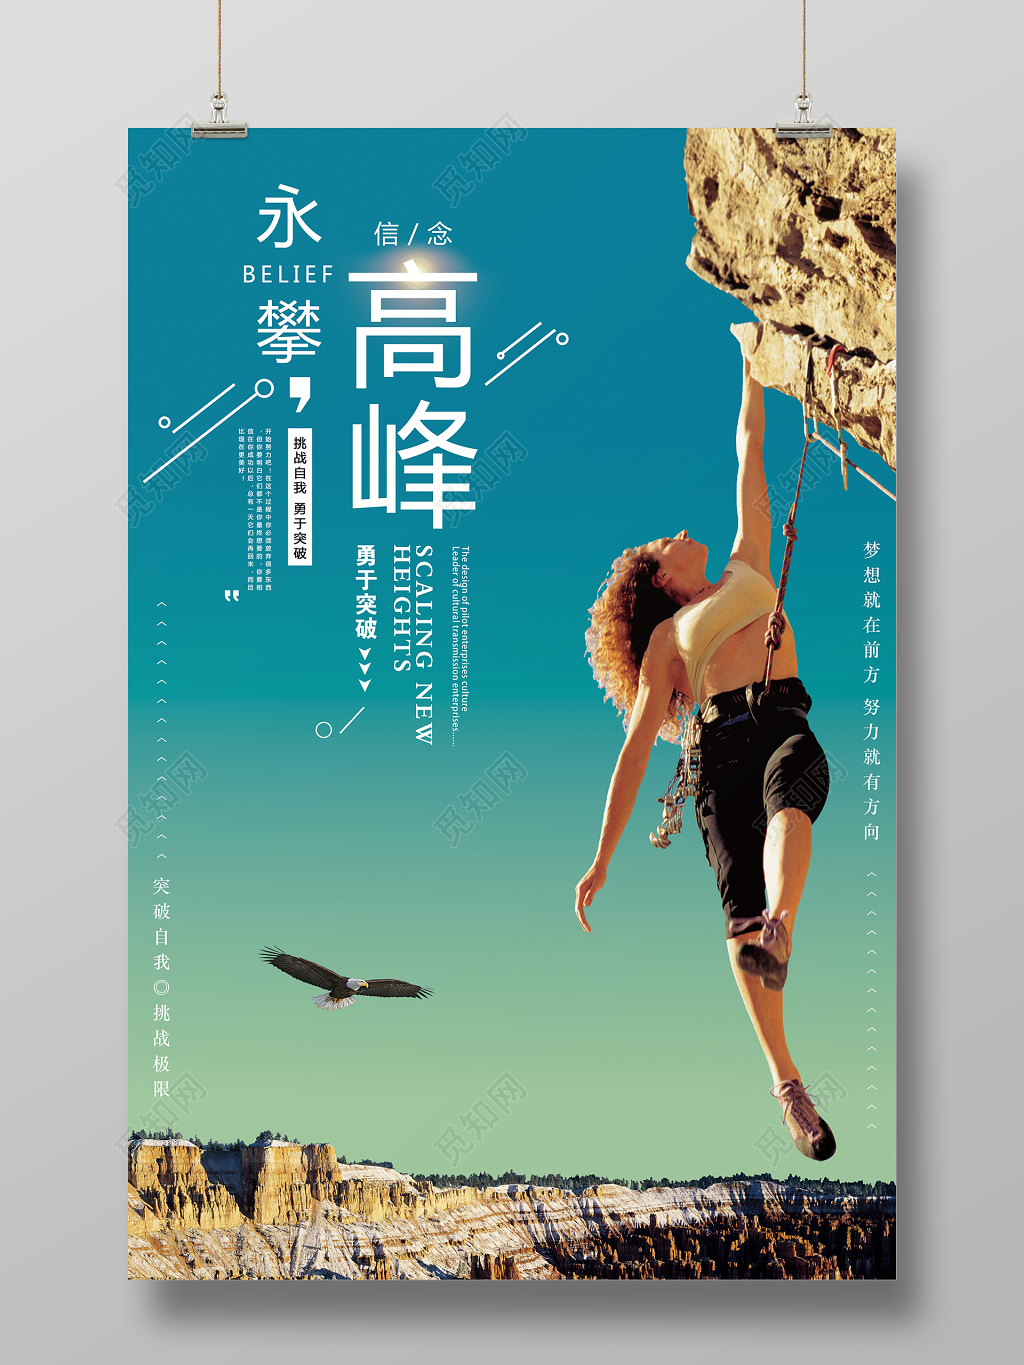 创意大气企业励志勇攀高峰宣传海报设计模板素材_ID:200048154-Veer图库